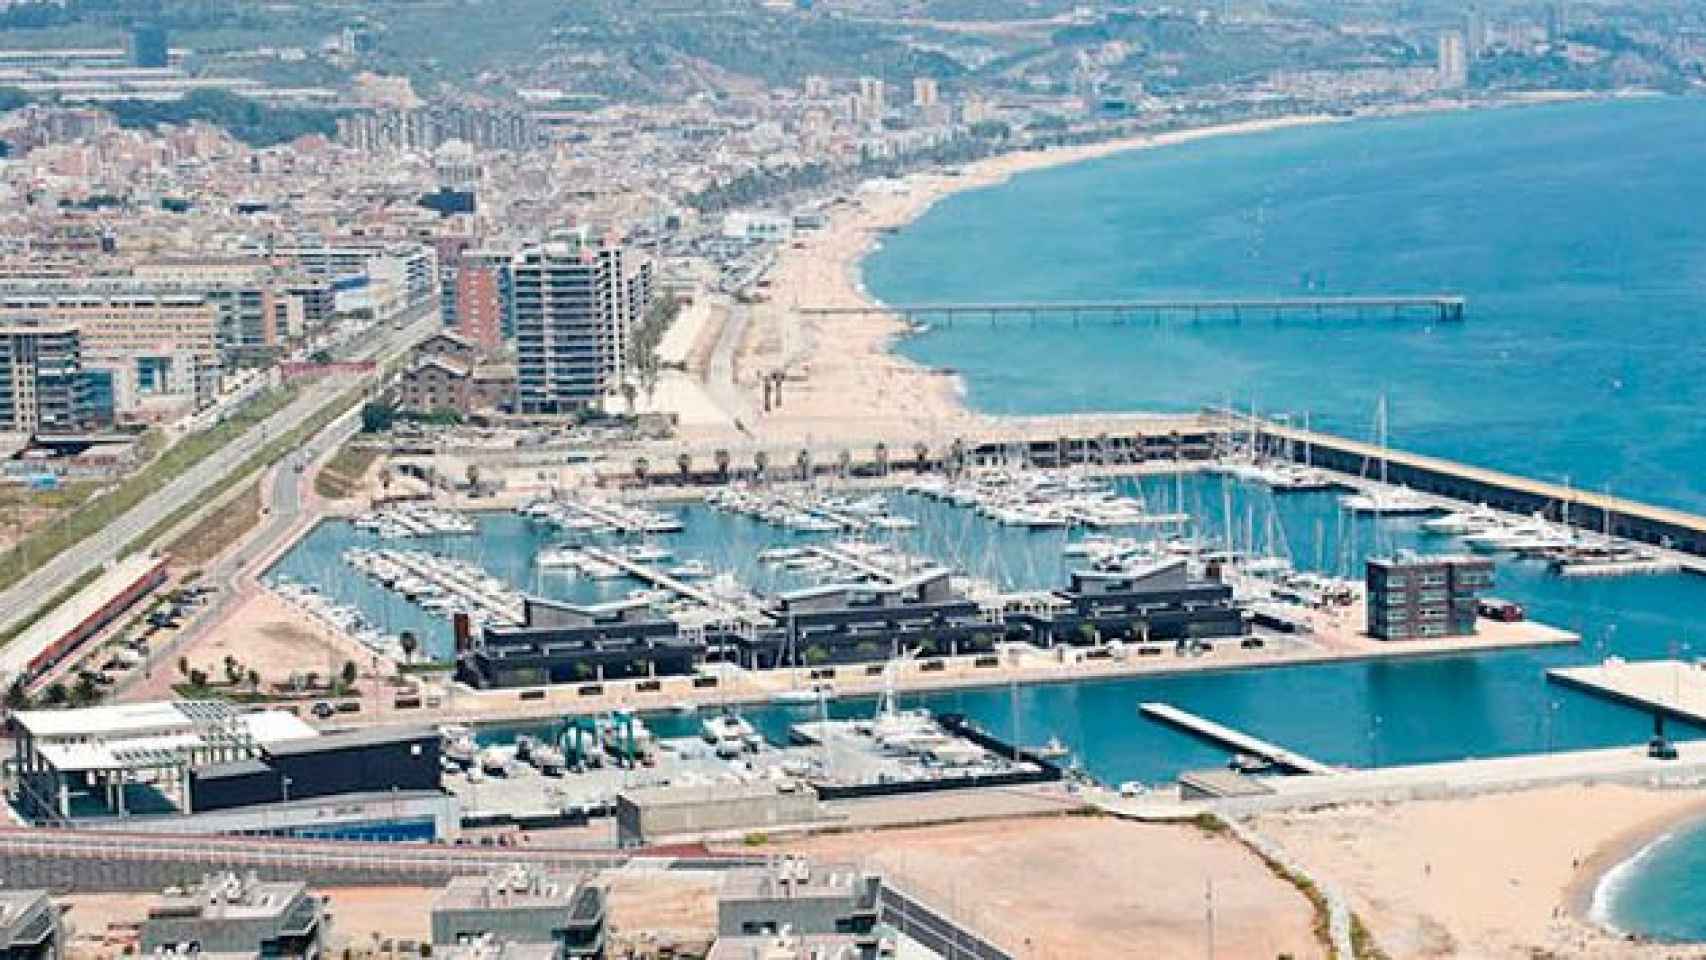 La Marina de Badalona, donde proliferan los pisos turísticos ilegales de la ciudad / CG